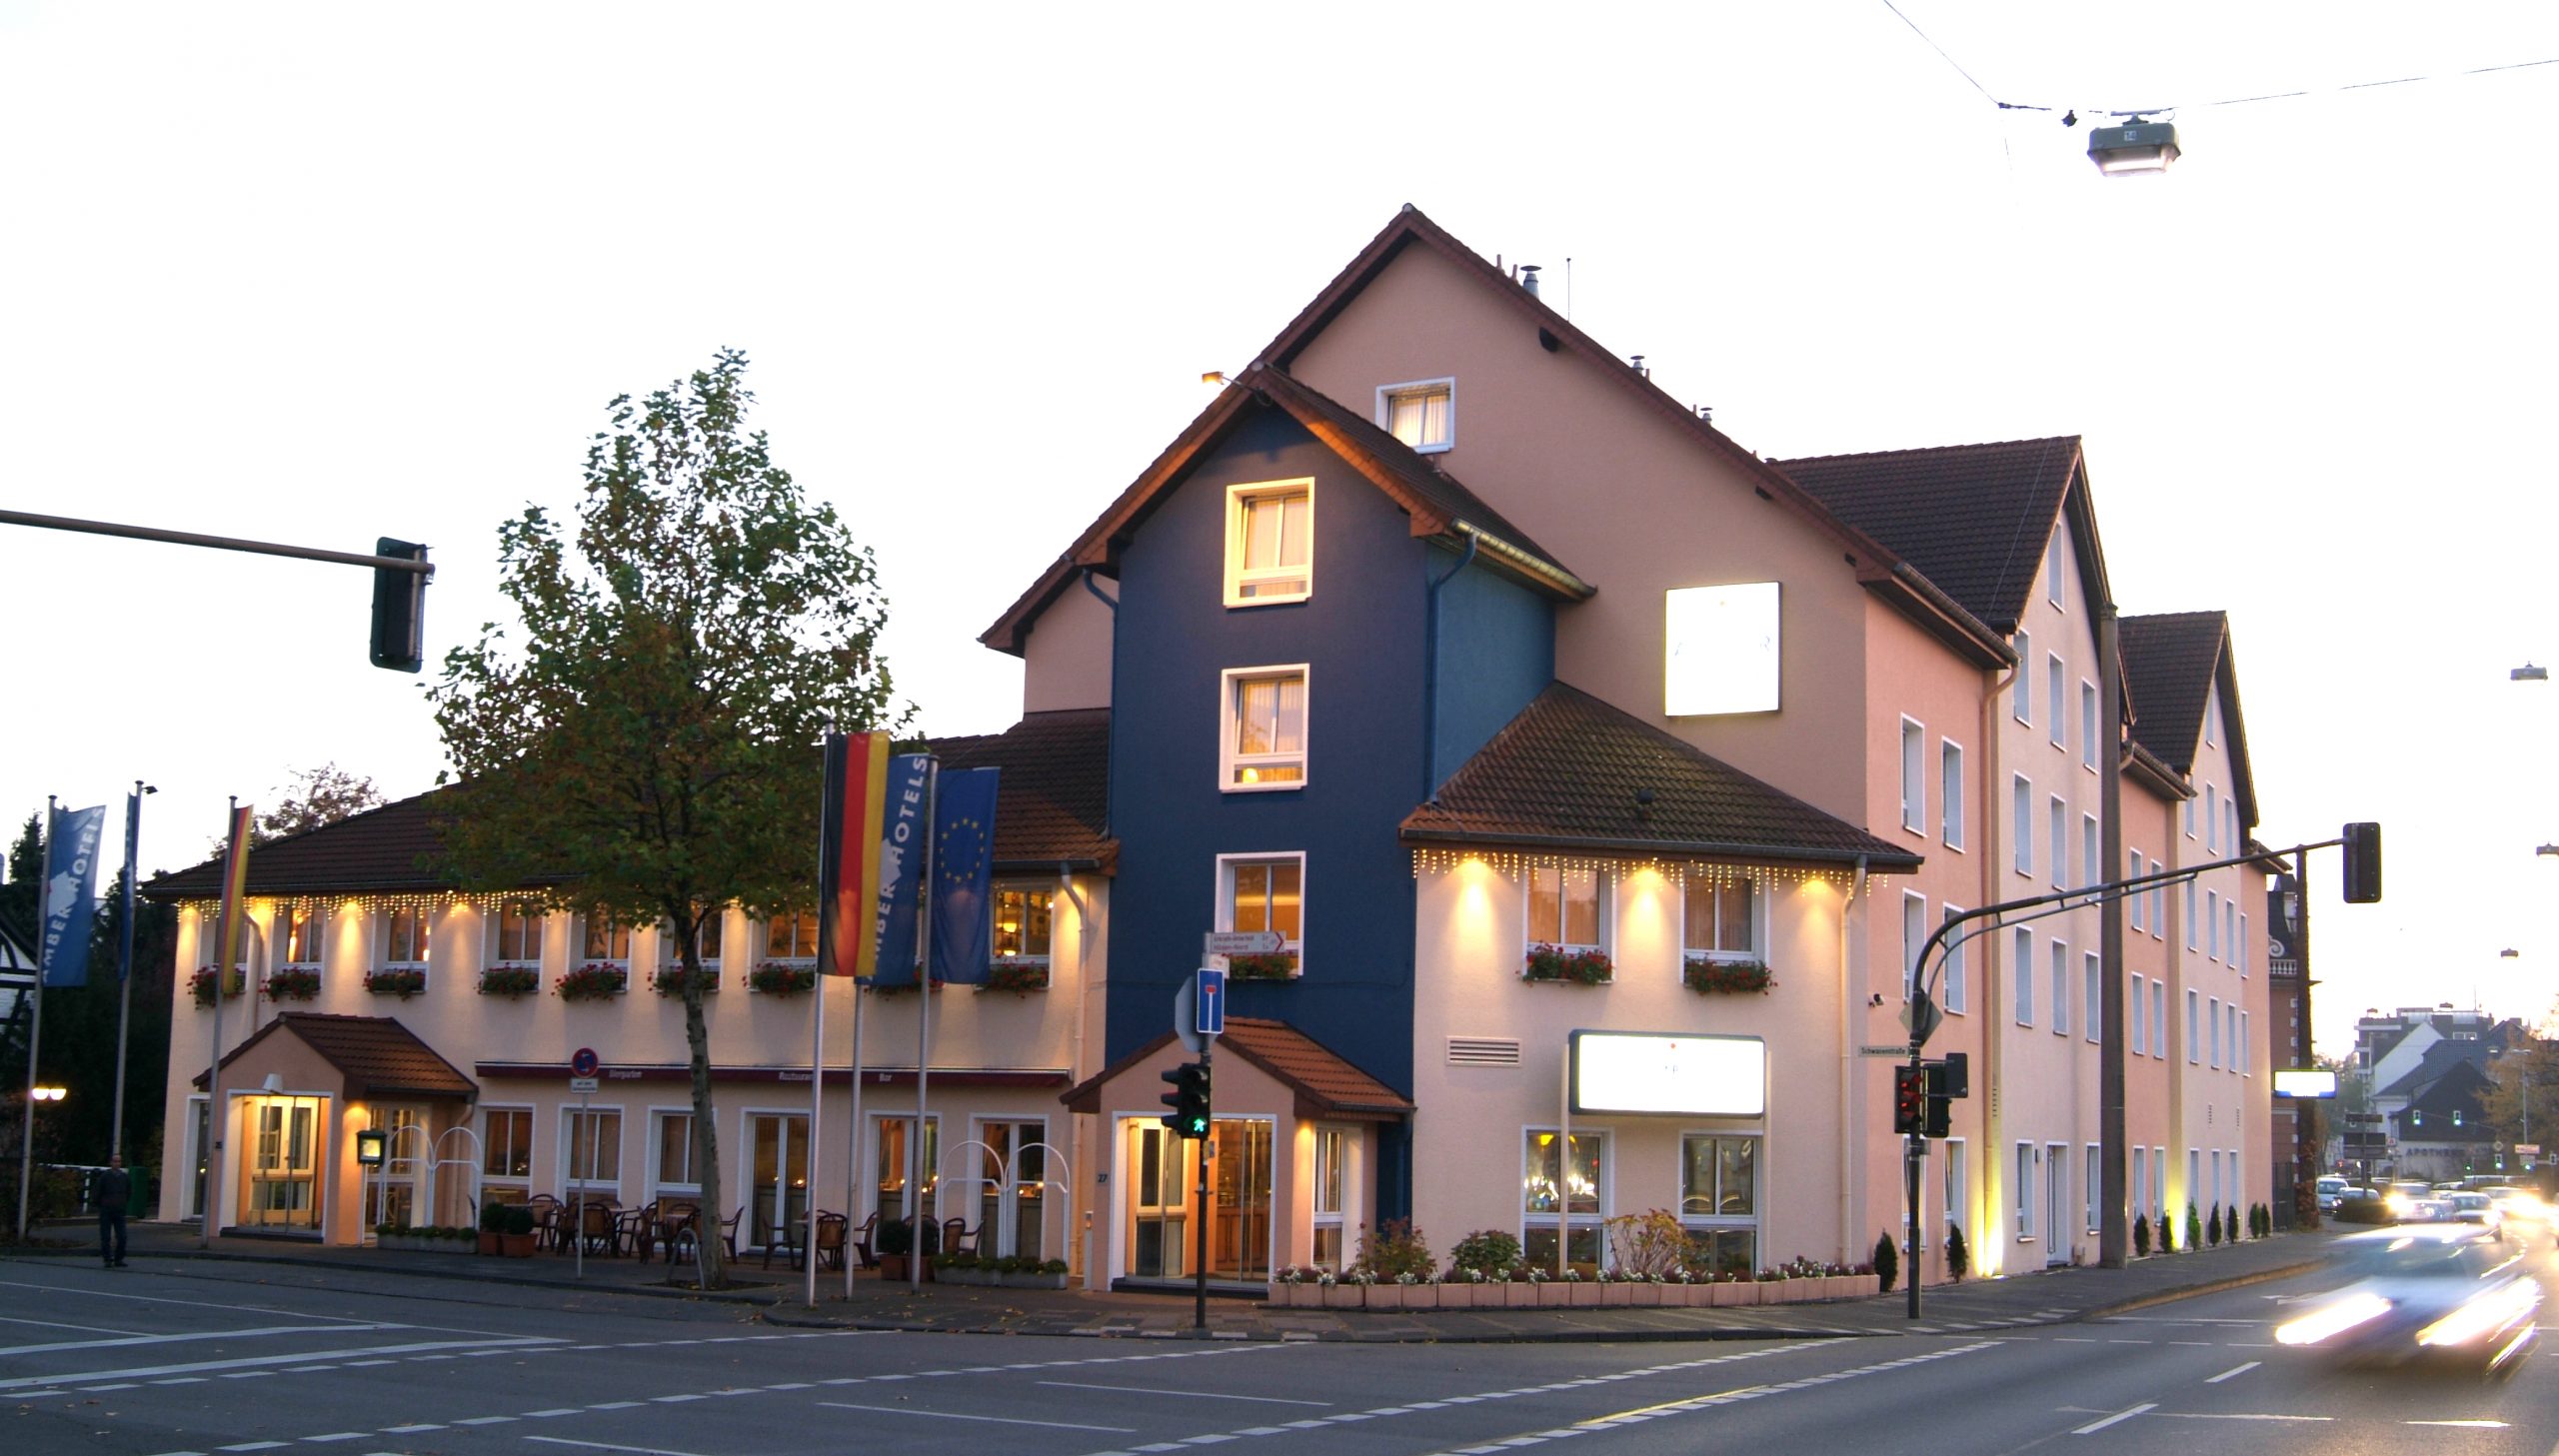 Neues Sure Hotel in Hilden bei Düsseldorf